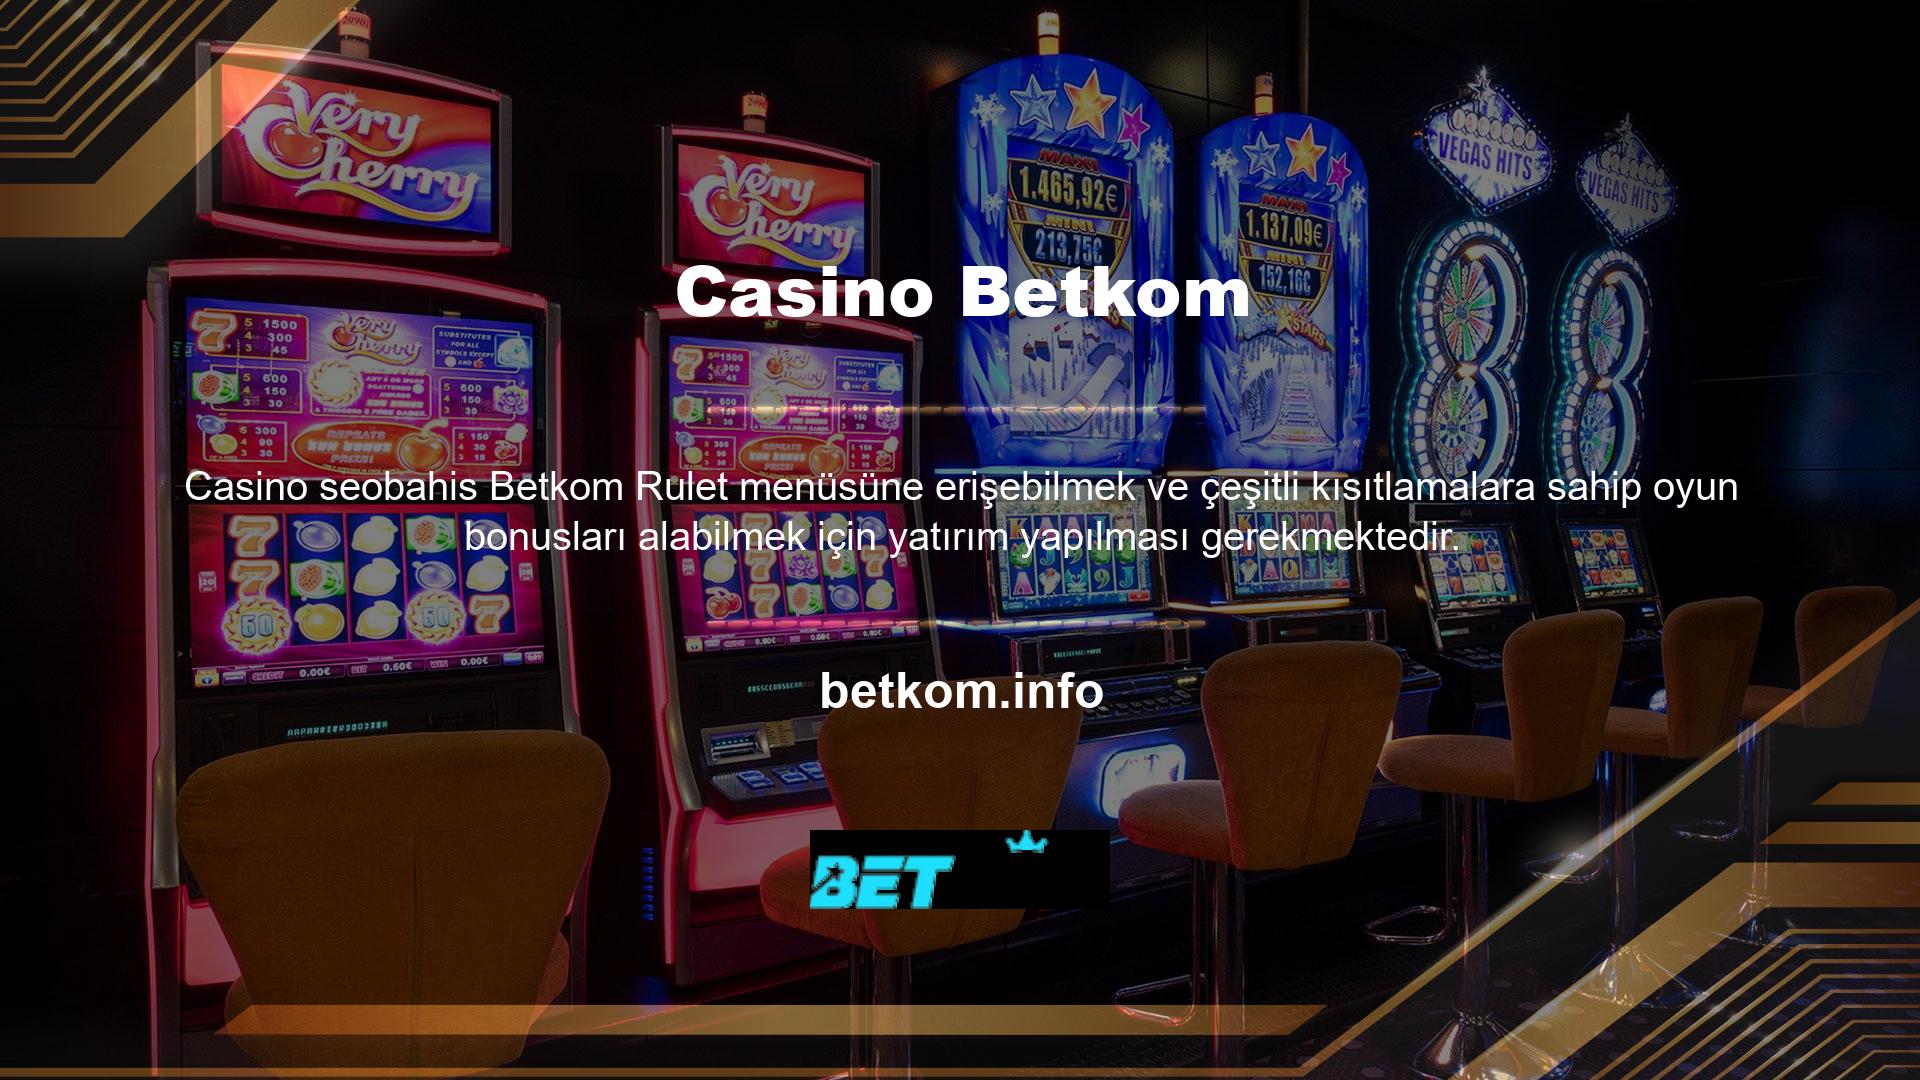 Betkom casino'ya yatırım yapmak, para yatırma ve çekme seçenekleriyle hızlı online işlemlerle güvenlidir